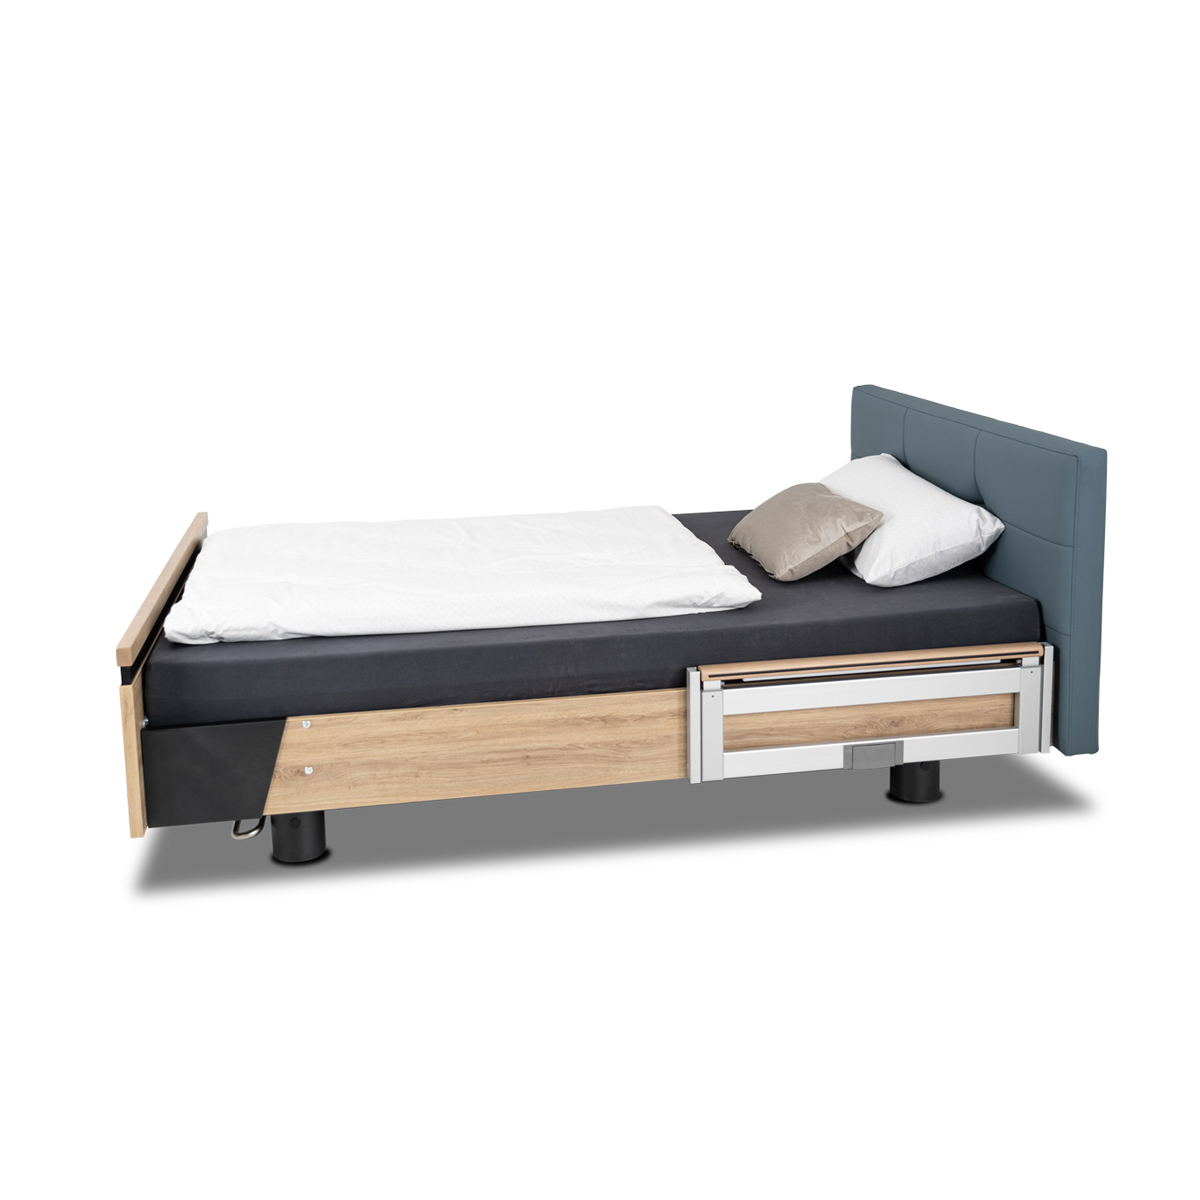 Design care bed AURA 120 cm (leather design)